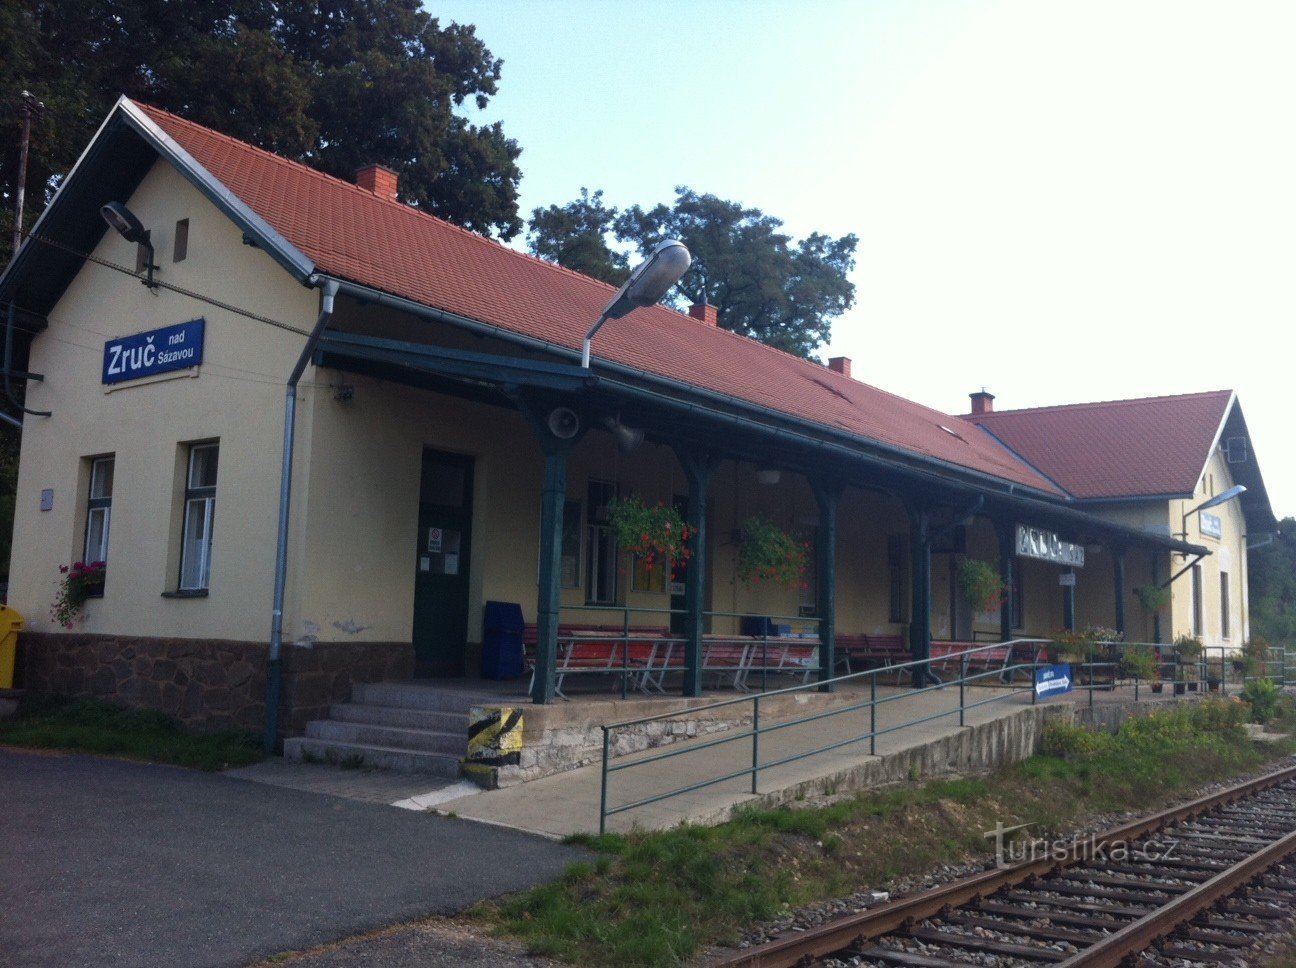 Залізнична станція Zruč nad Sázavou